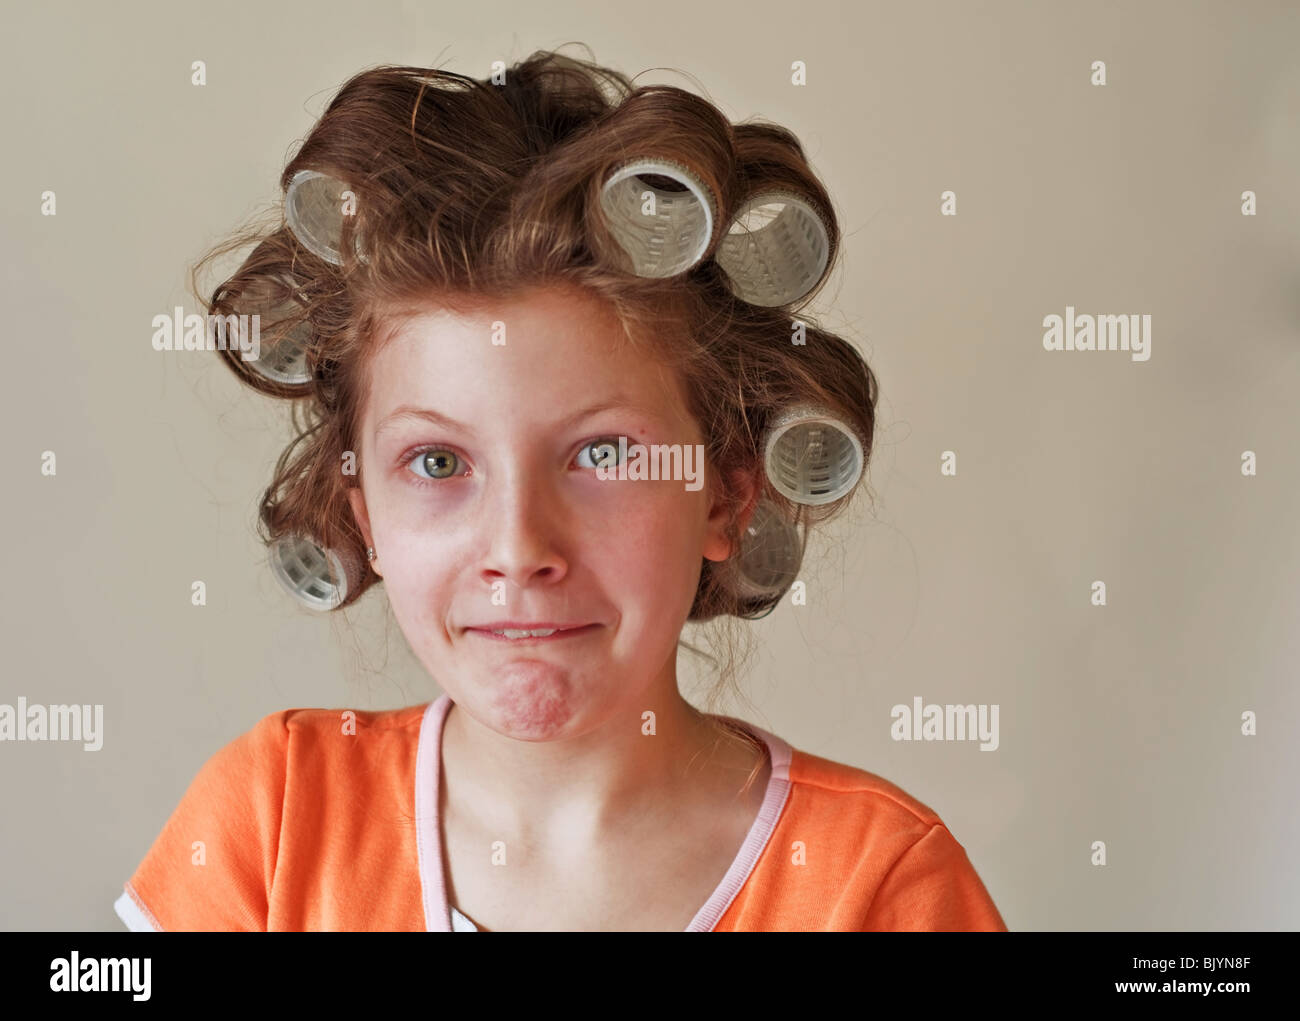 Esta imagen es una niña de 9 año de edad caucásico con ojos verdes, tiene su pelo en los rodillos (rulo) y tener un humor facial. Foto de stock